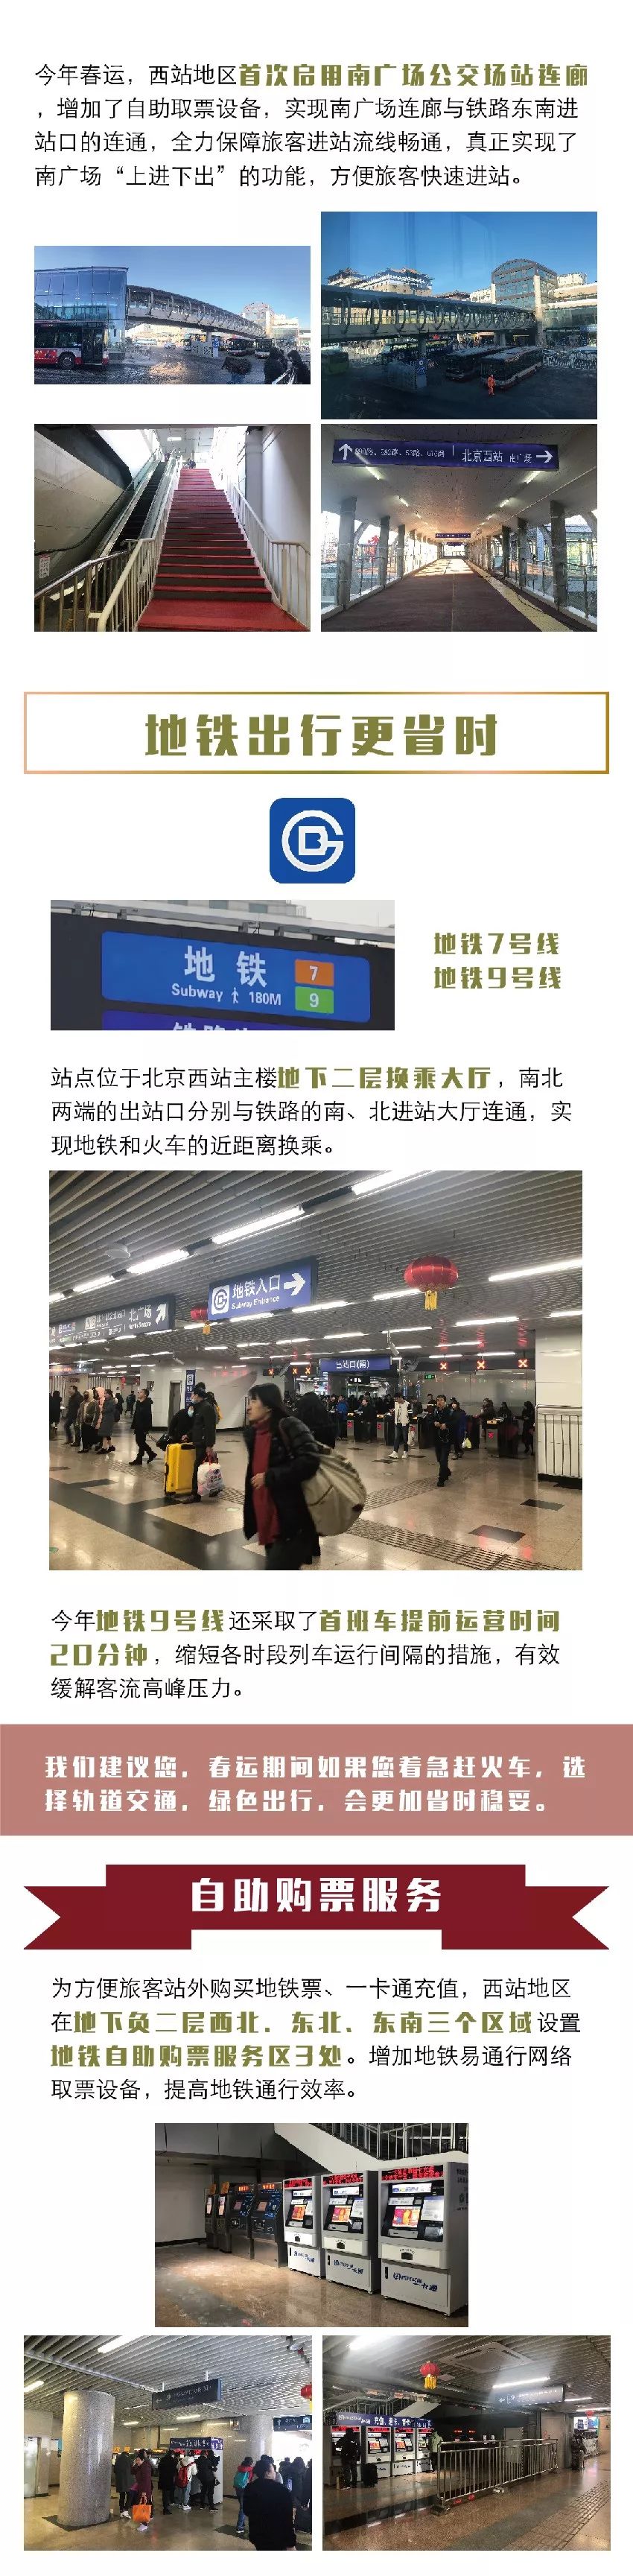 2019春运北京西站自助购票取票机、停车出行提示